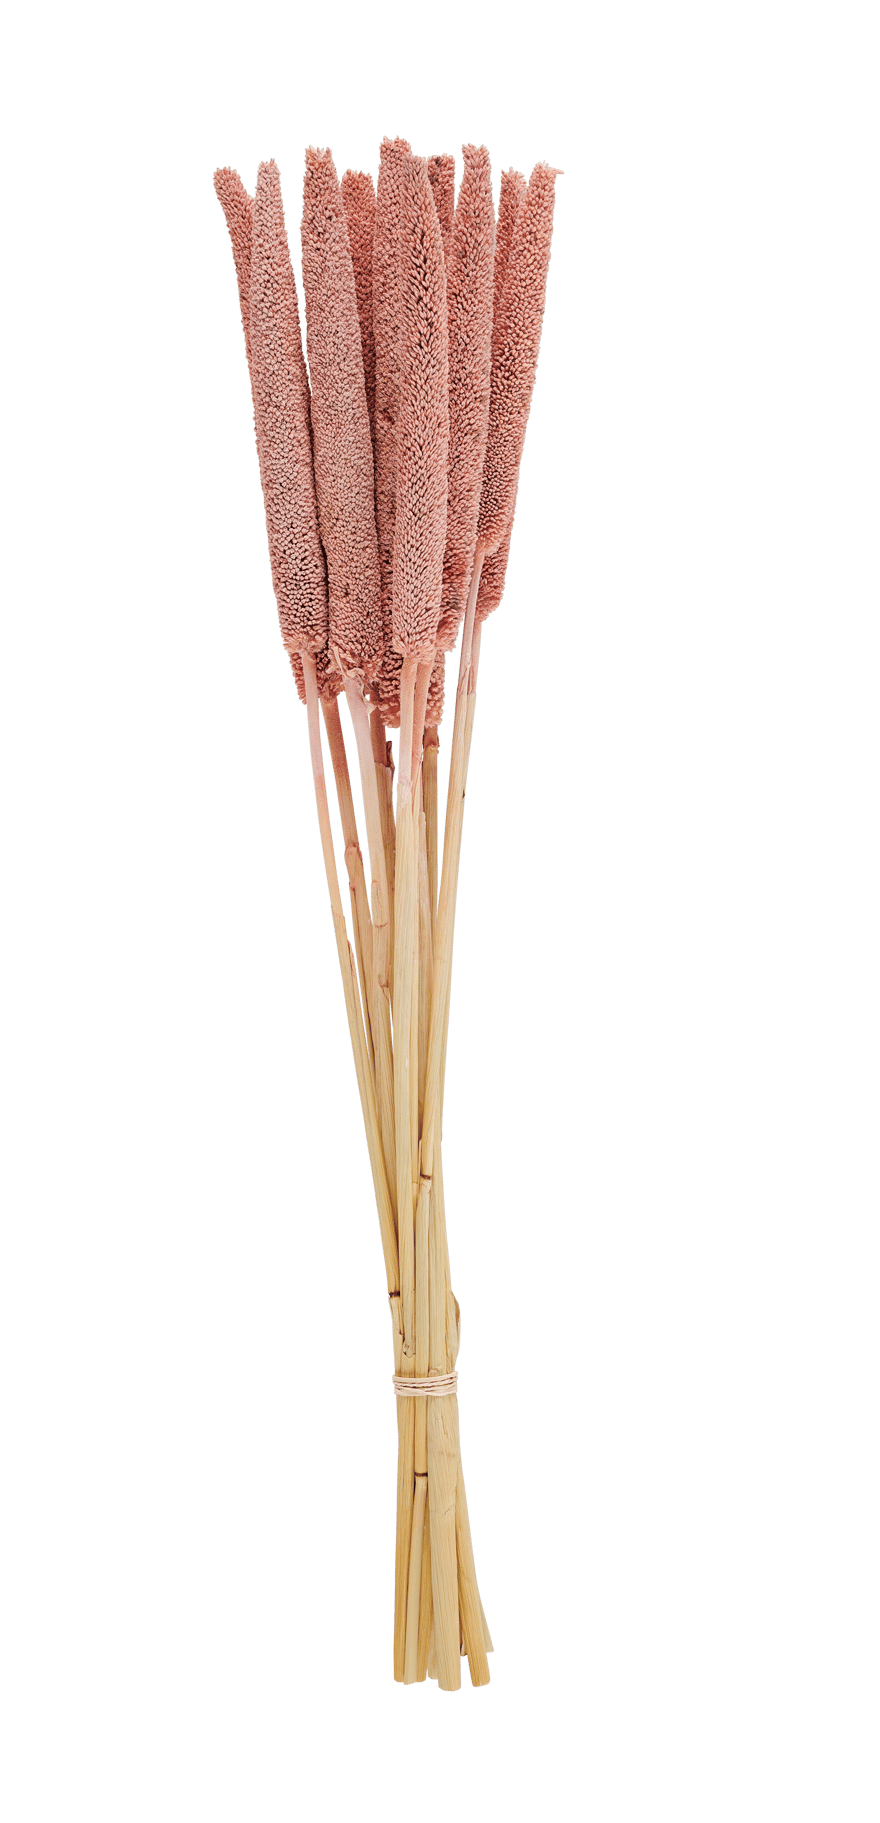 BABALA Marsh cane set of 10 4 ochre colours - best price from Maltashopper.com CS662844-OCHRE